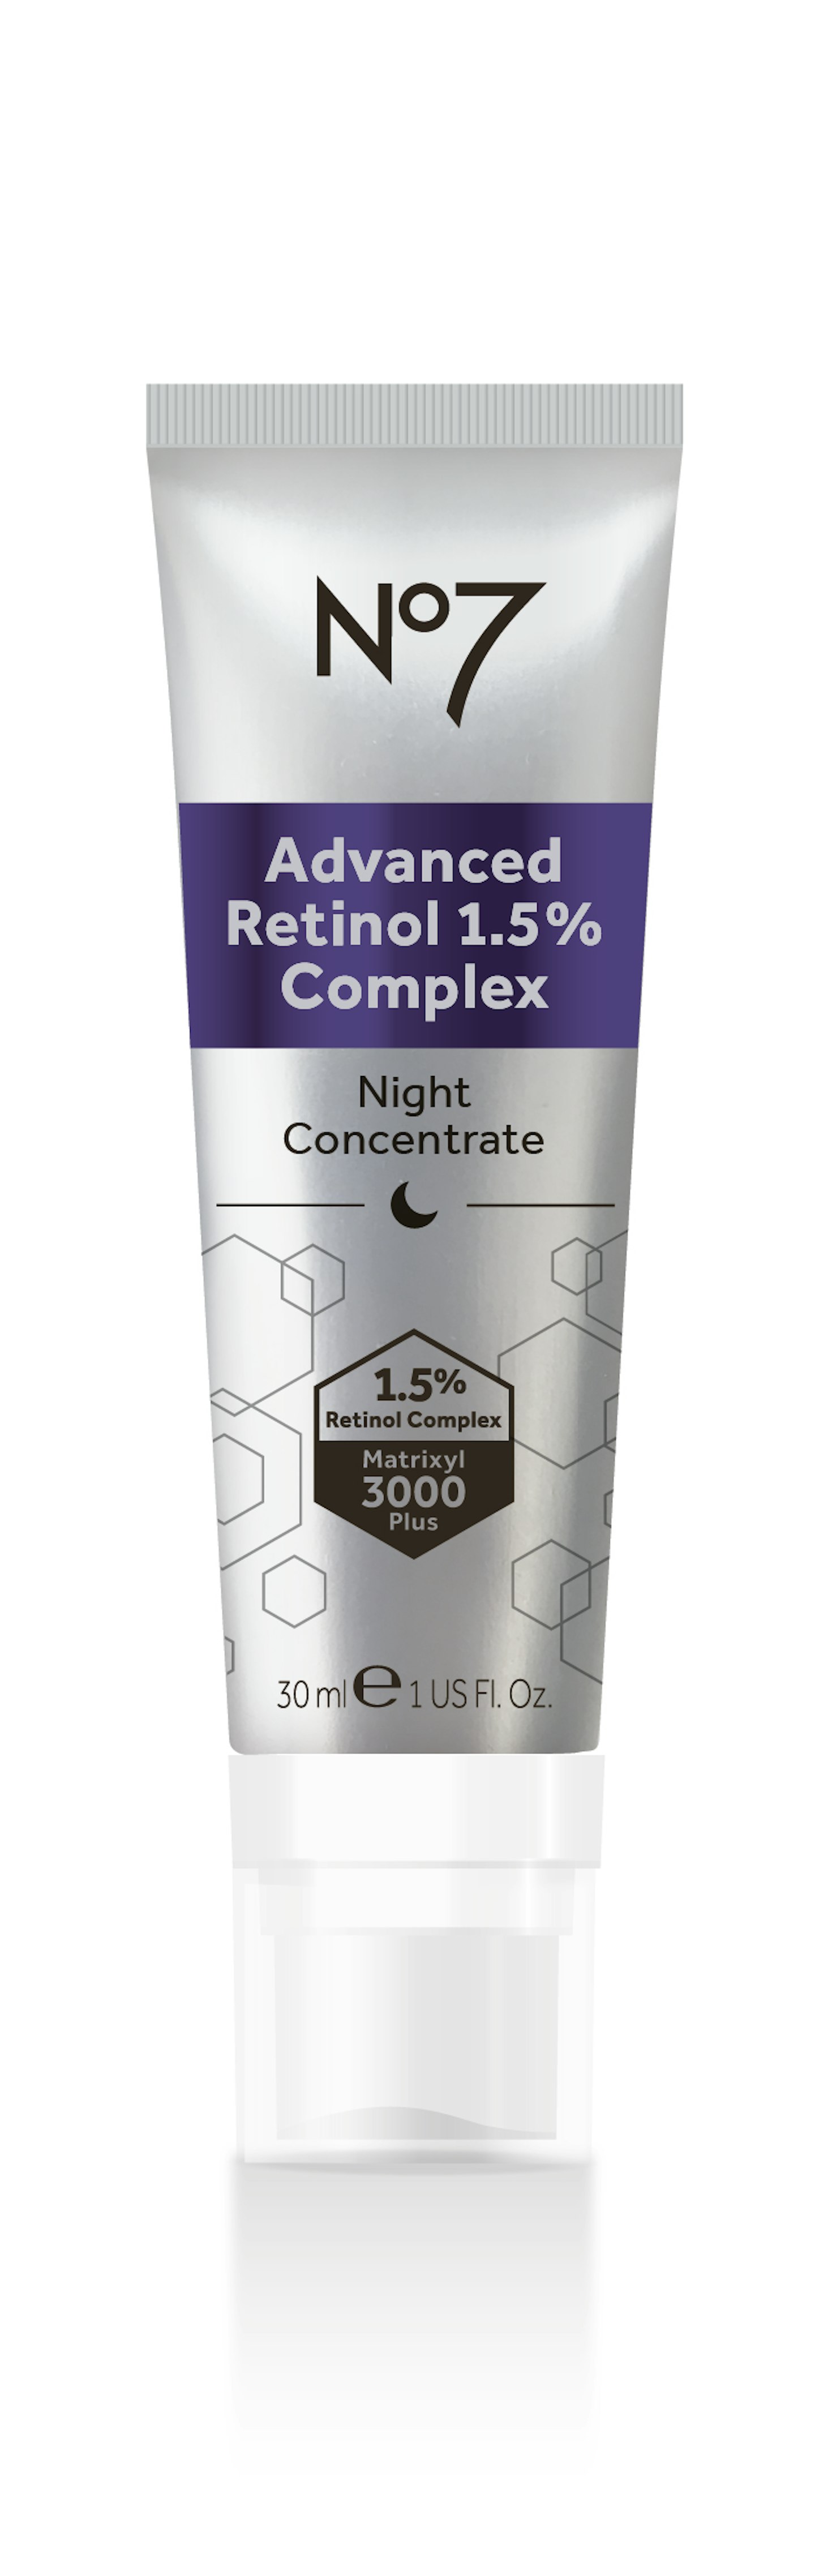 No7 ADVANCED Retinol 1.5% Complex Night Concentrate, £34